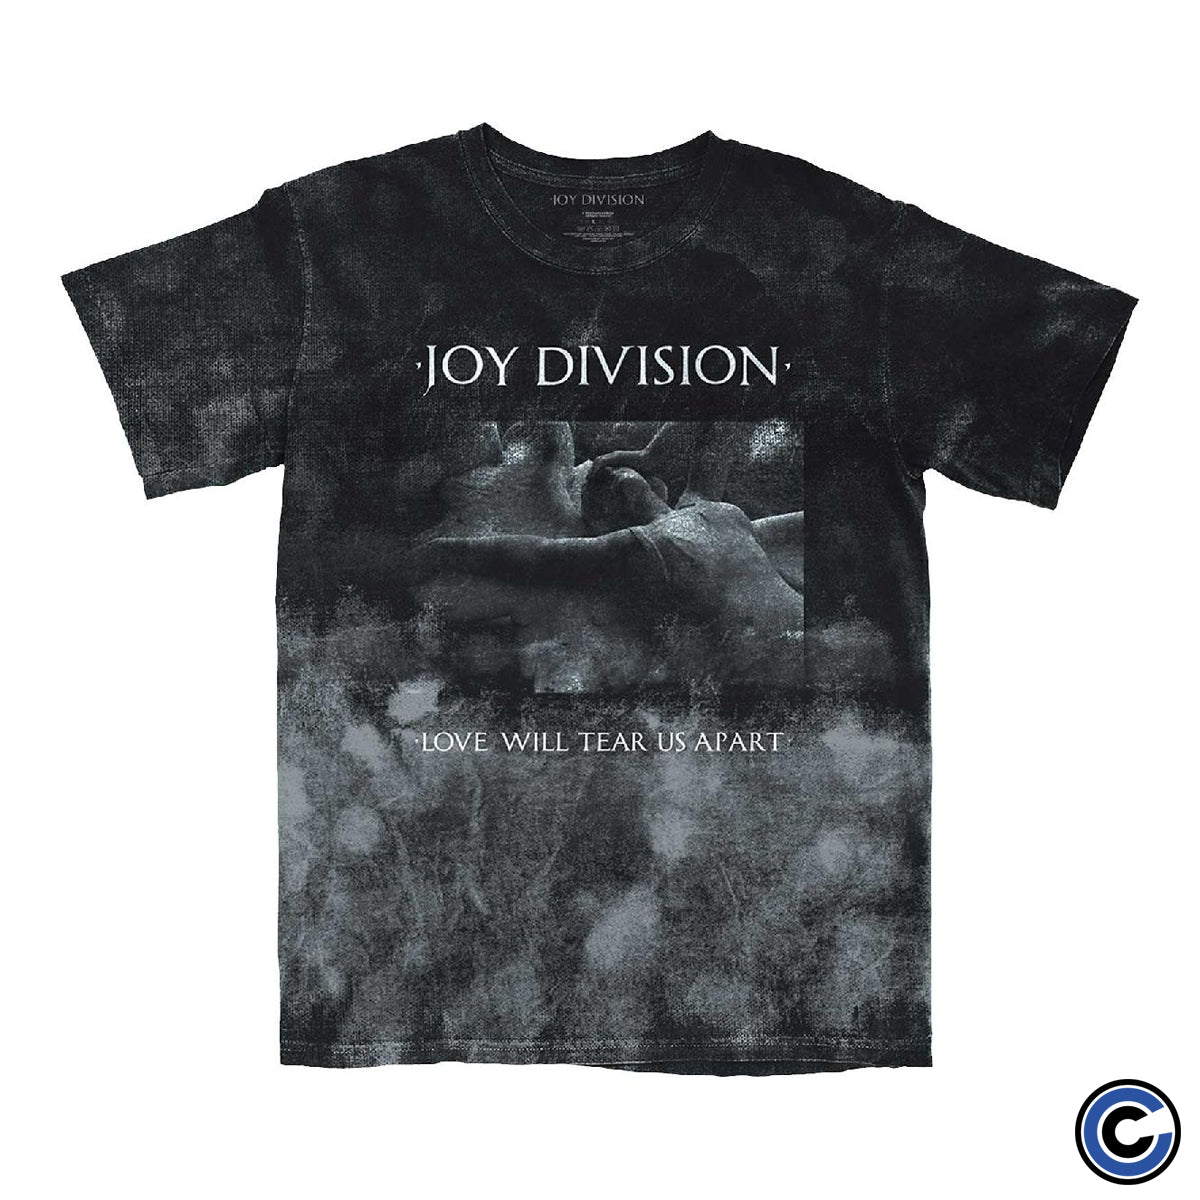 Joy Division "Tear Us Apart Dip Dye" Shirt